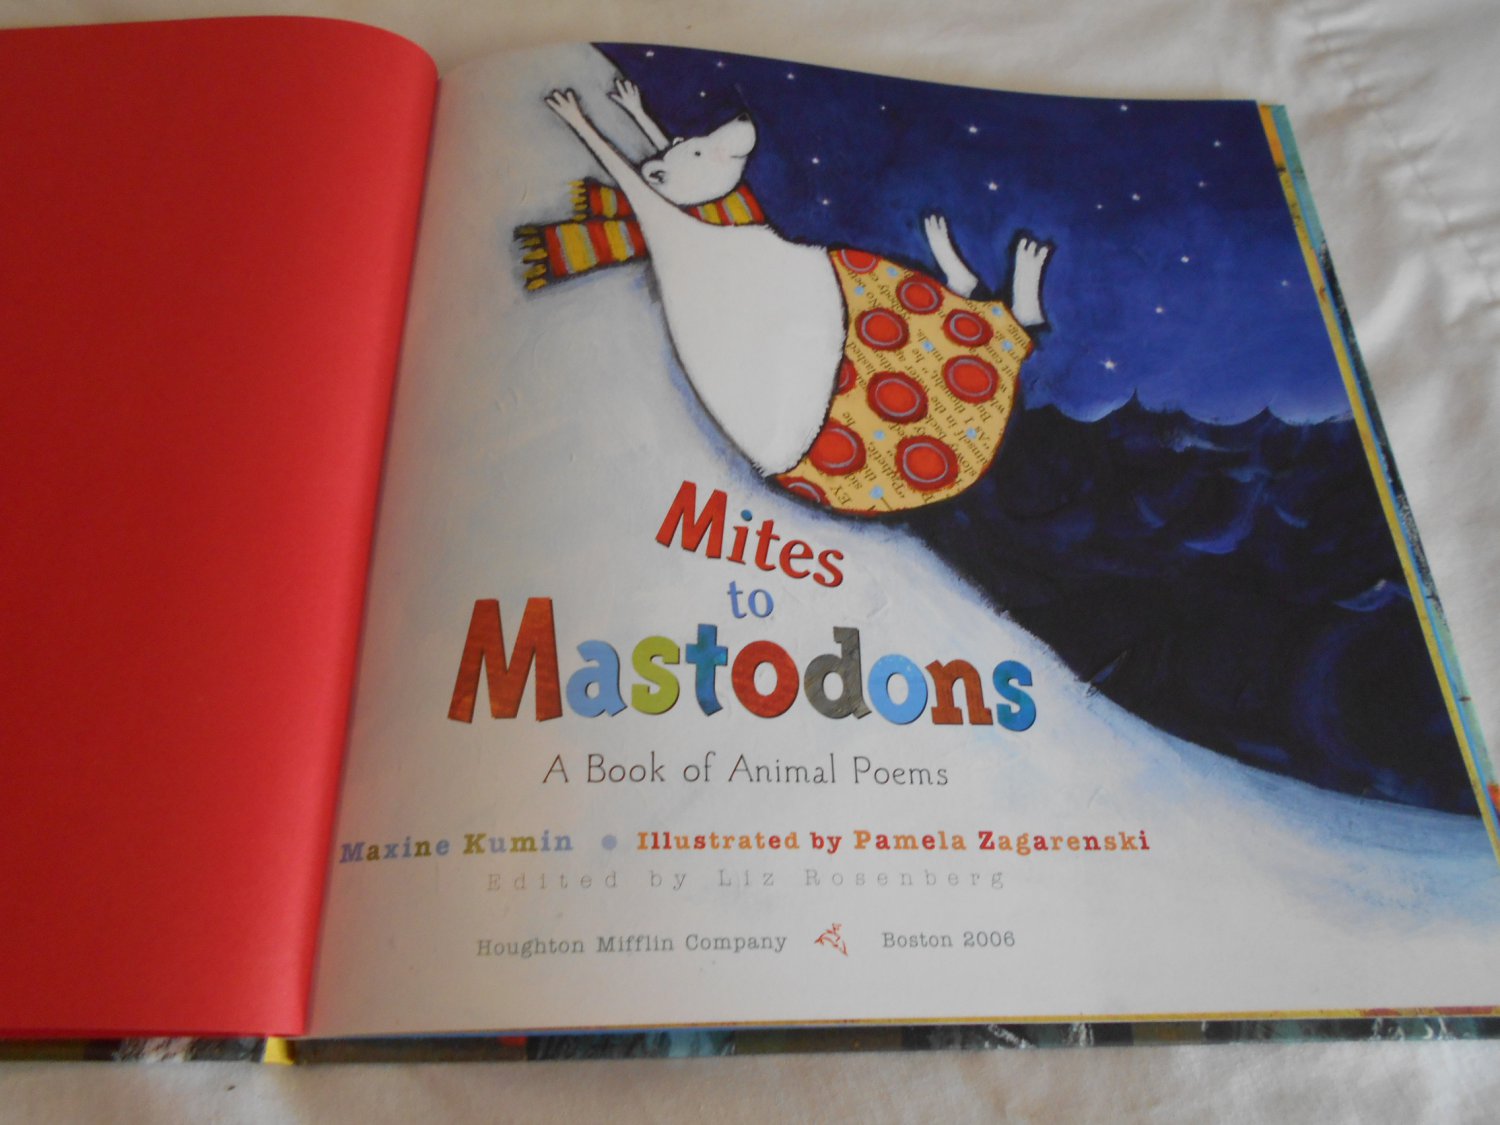 Mites to Mastodons by Maxine Kumin